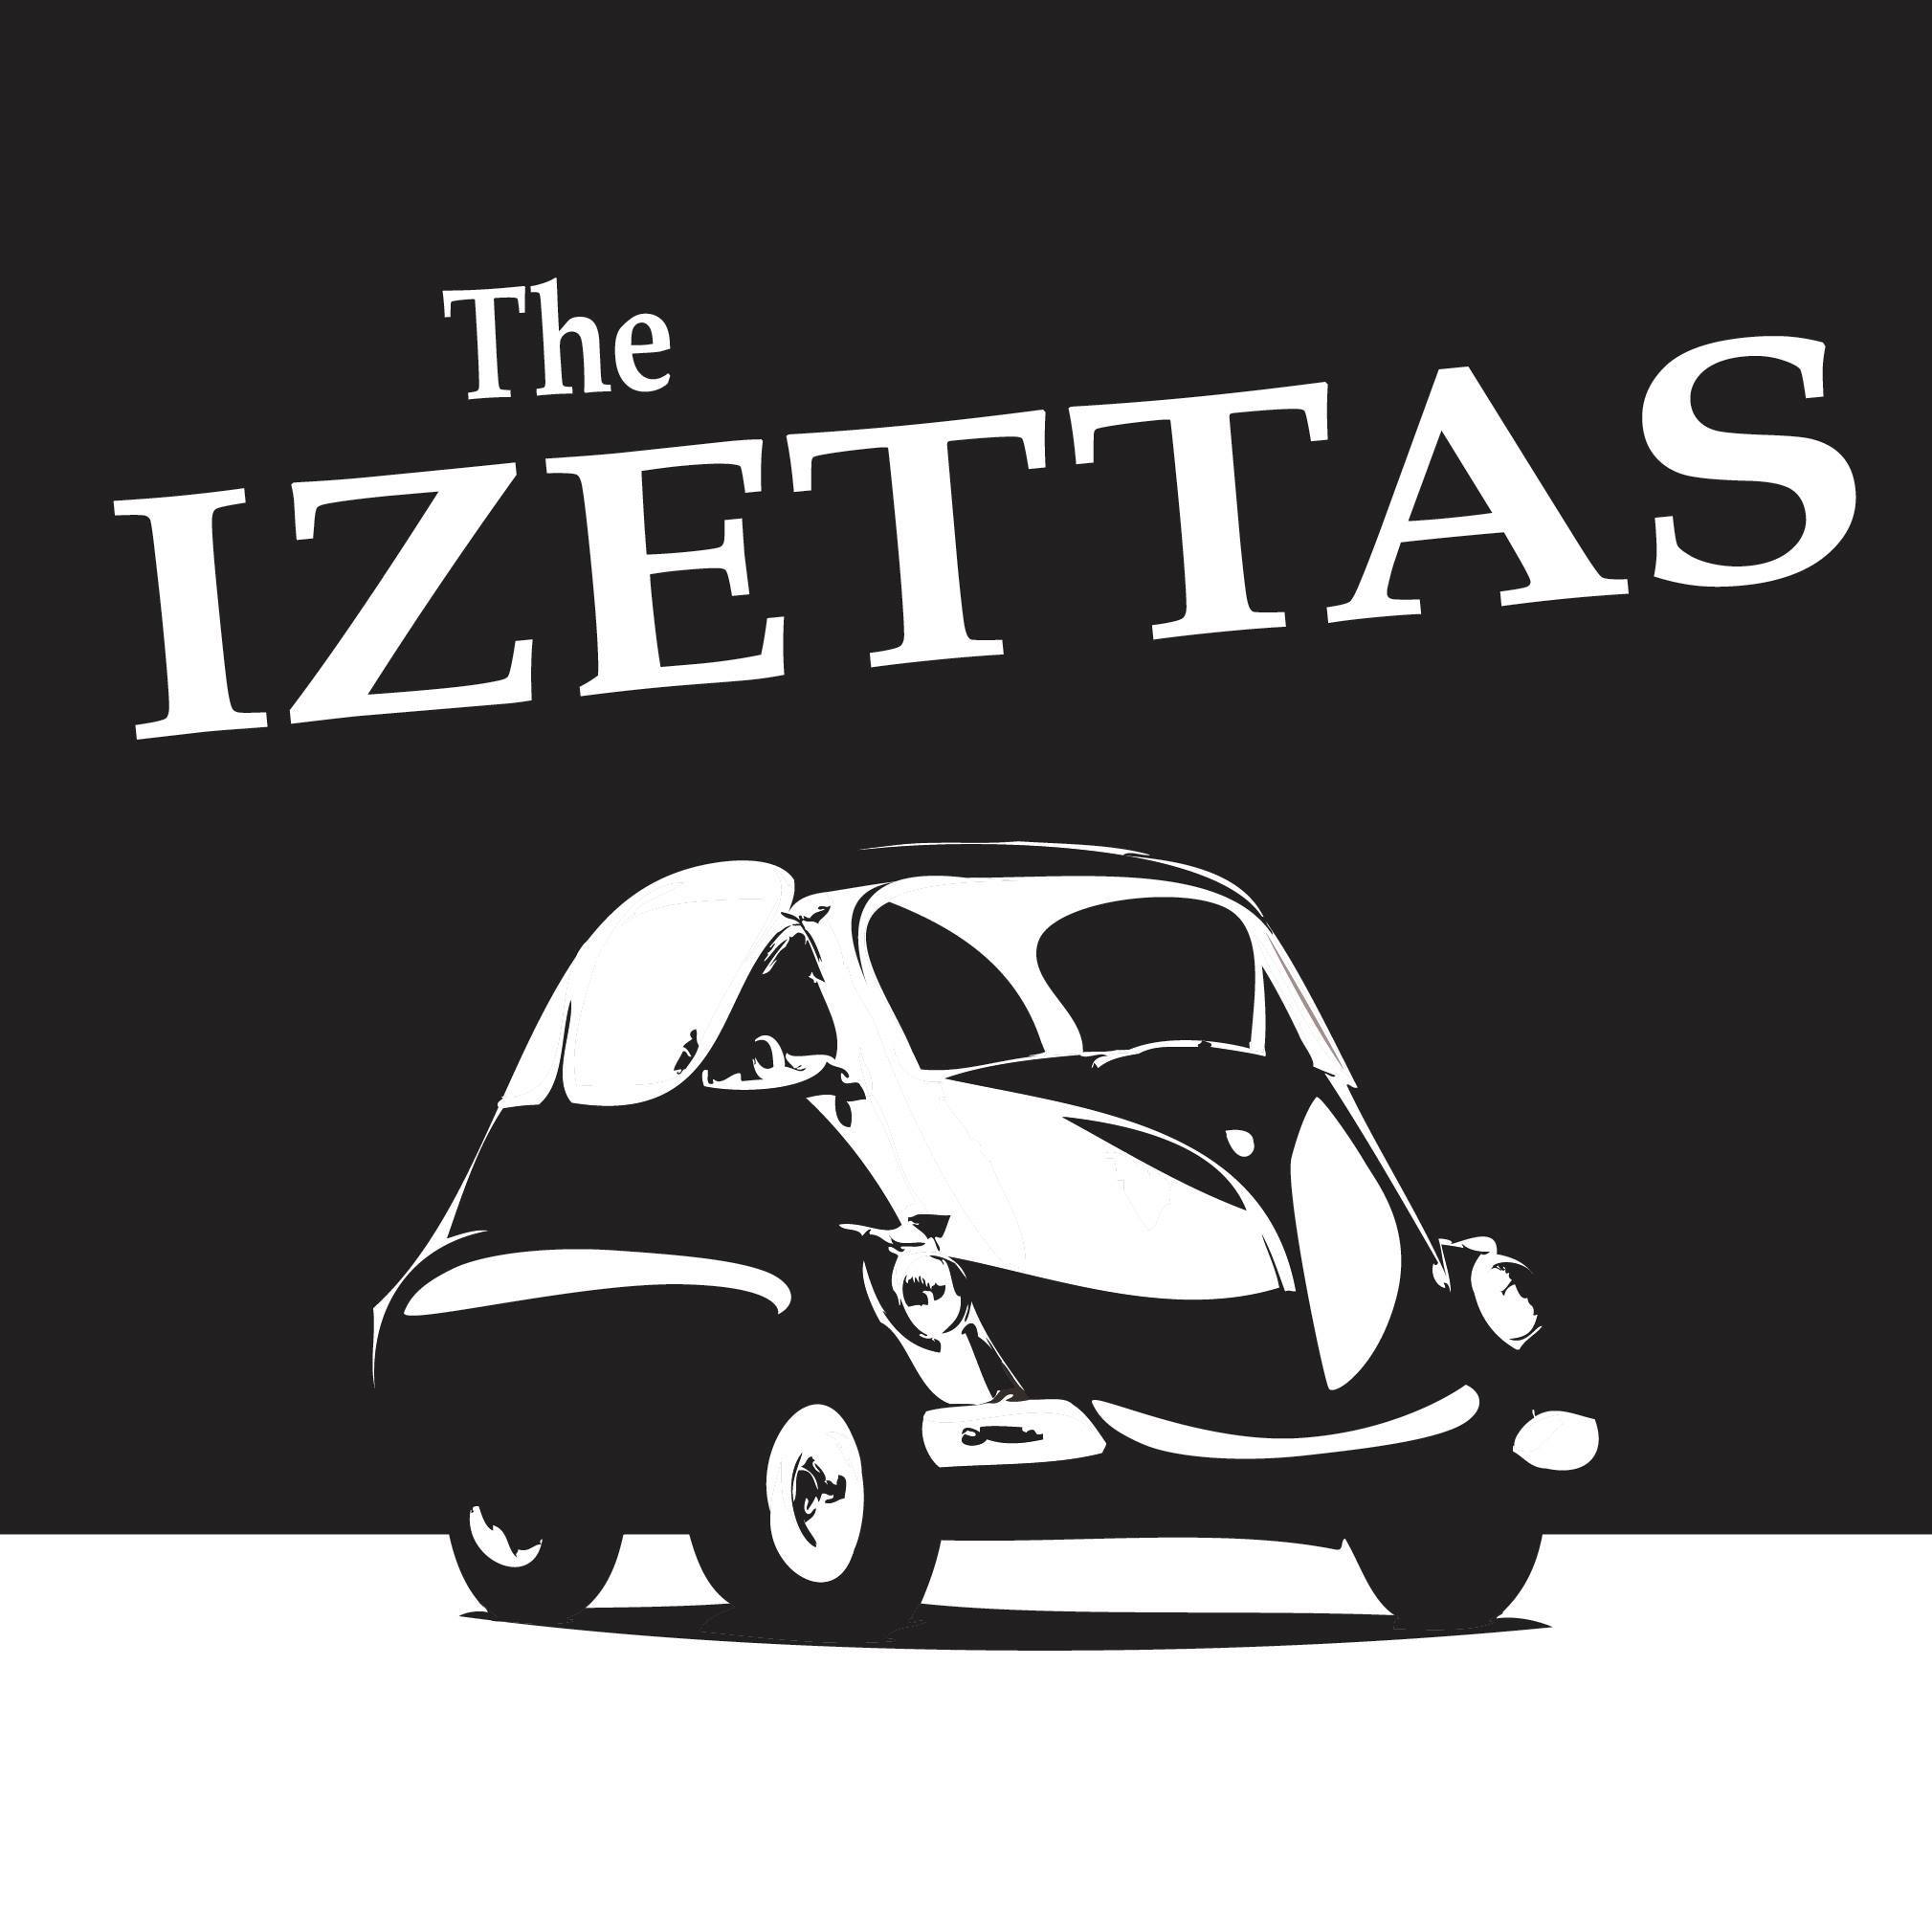 The Izettas